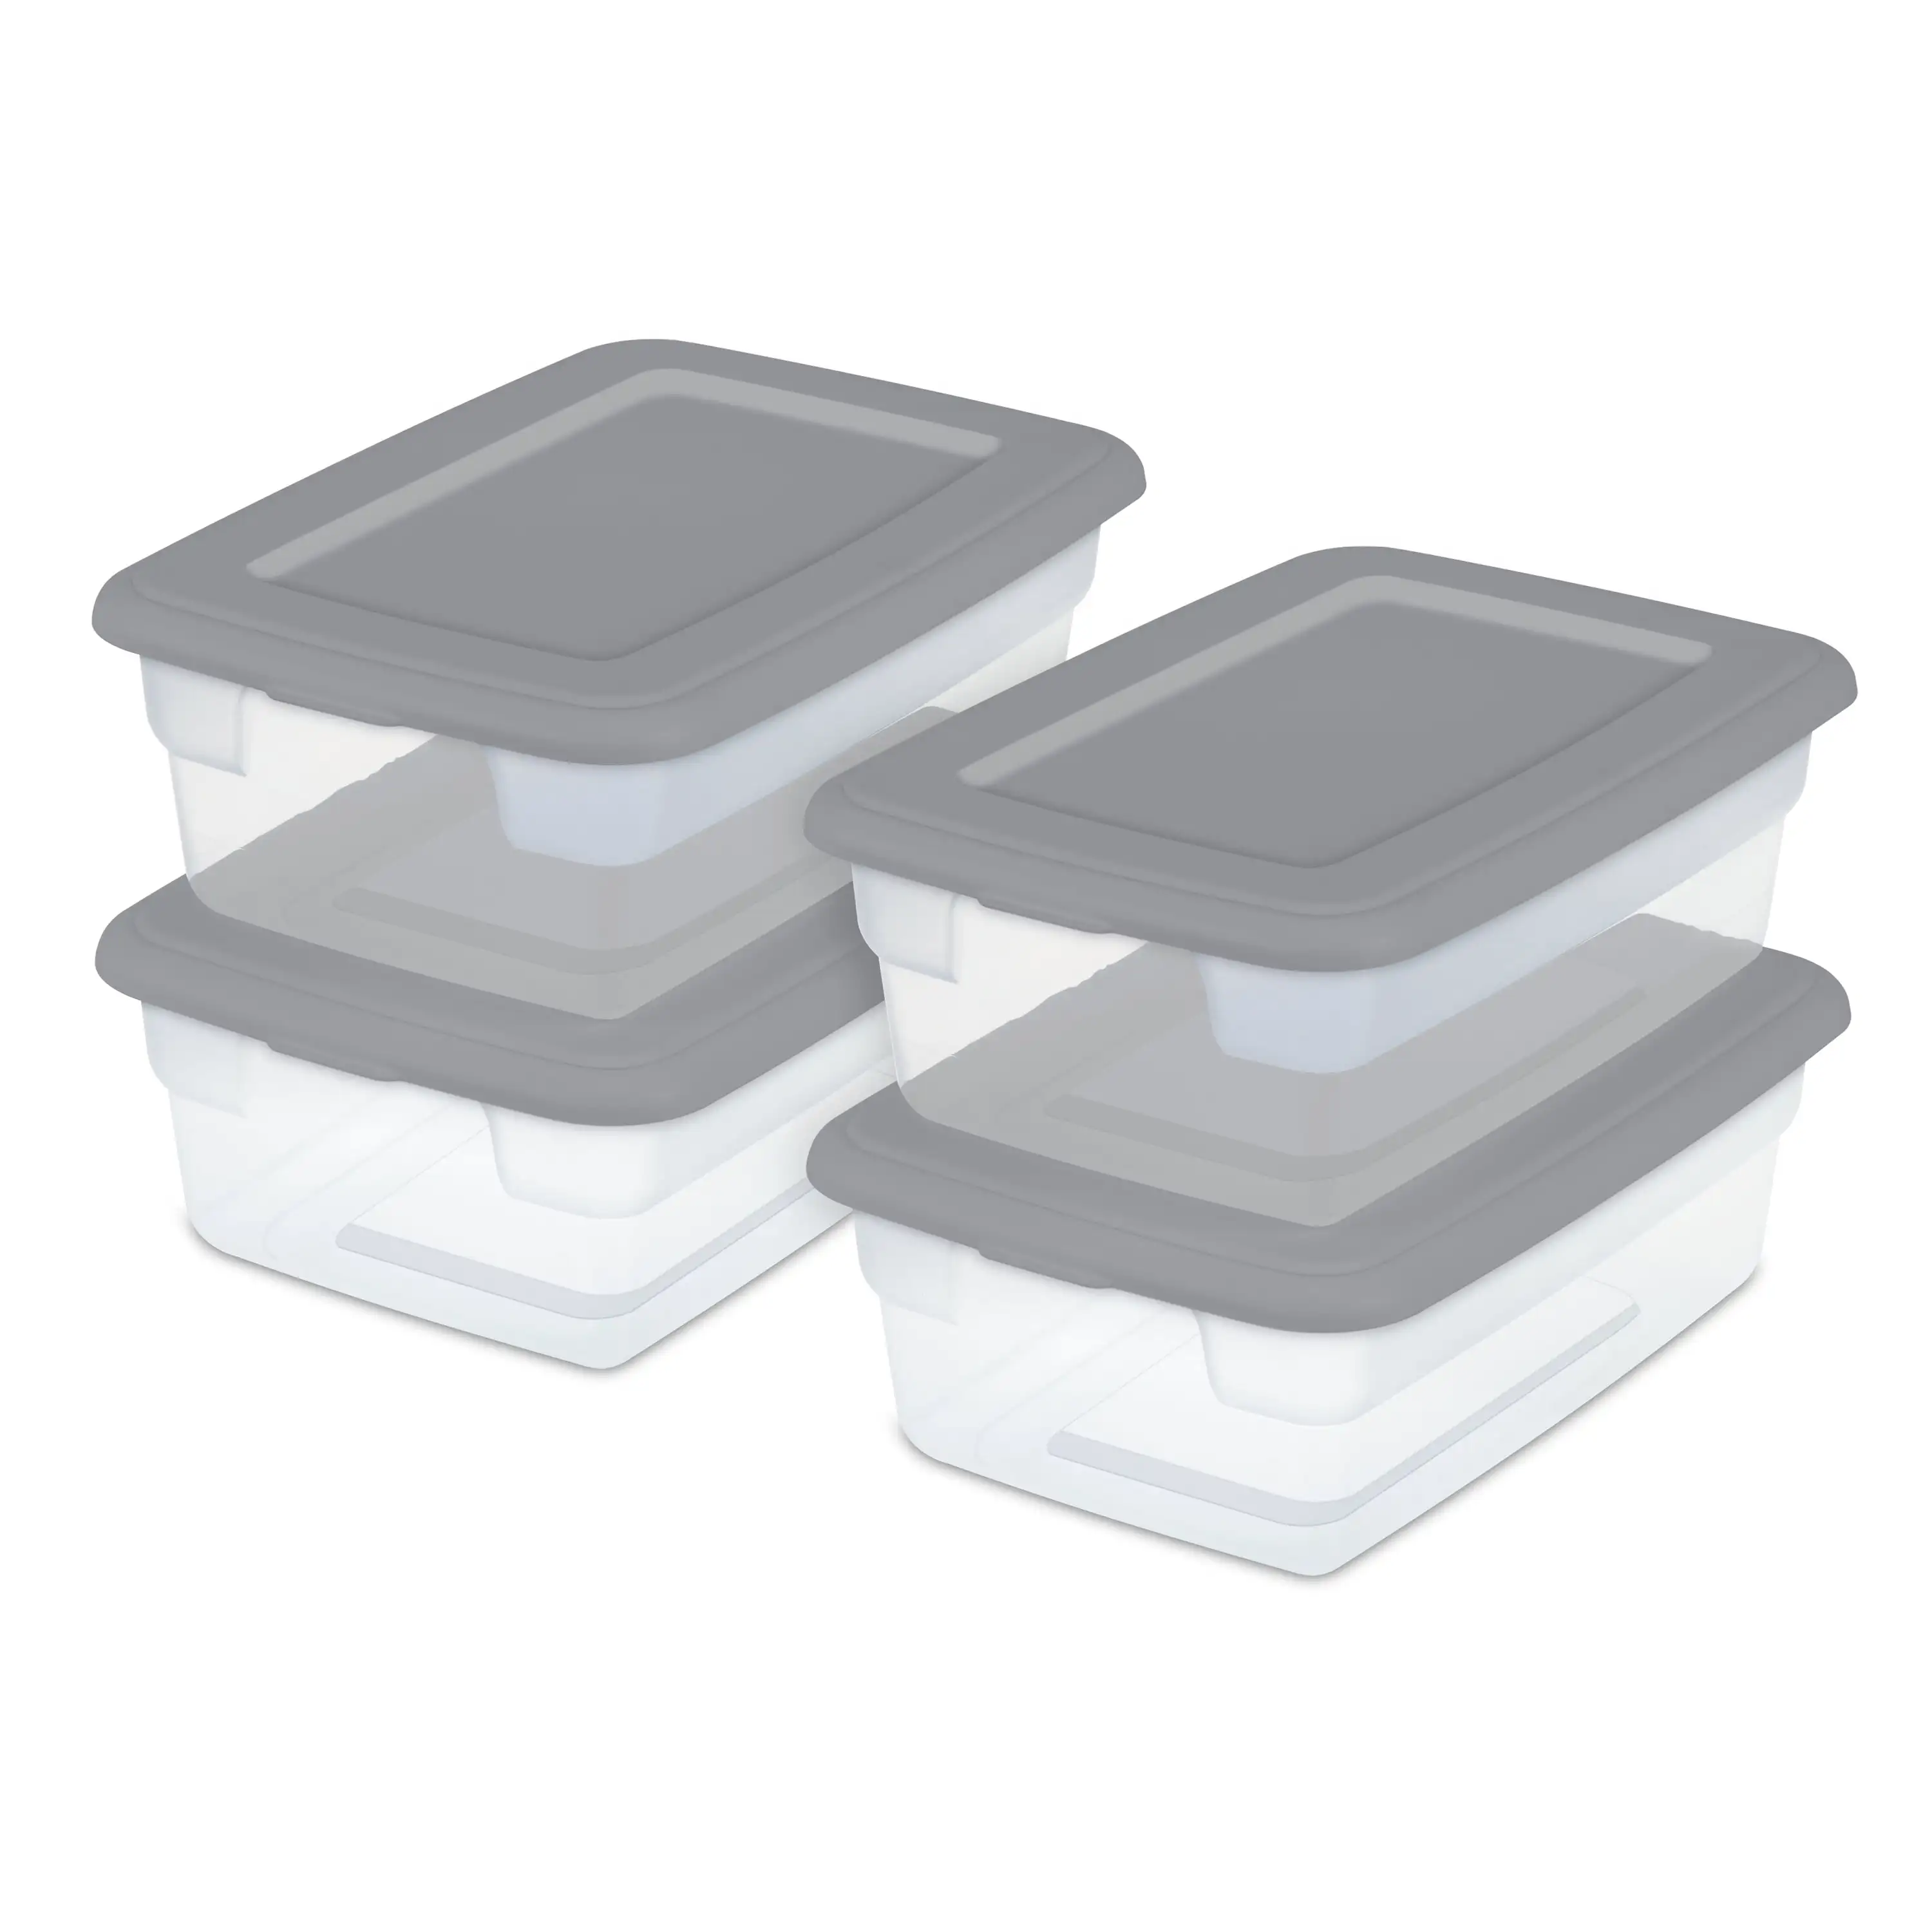 

3 Gallon Plastic Storage Box, Gray and Clear, 16 Count Organize Storage Plastic Storage Boxes